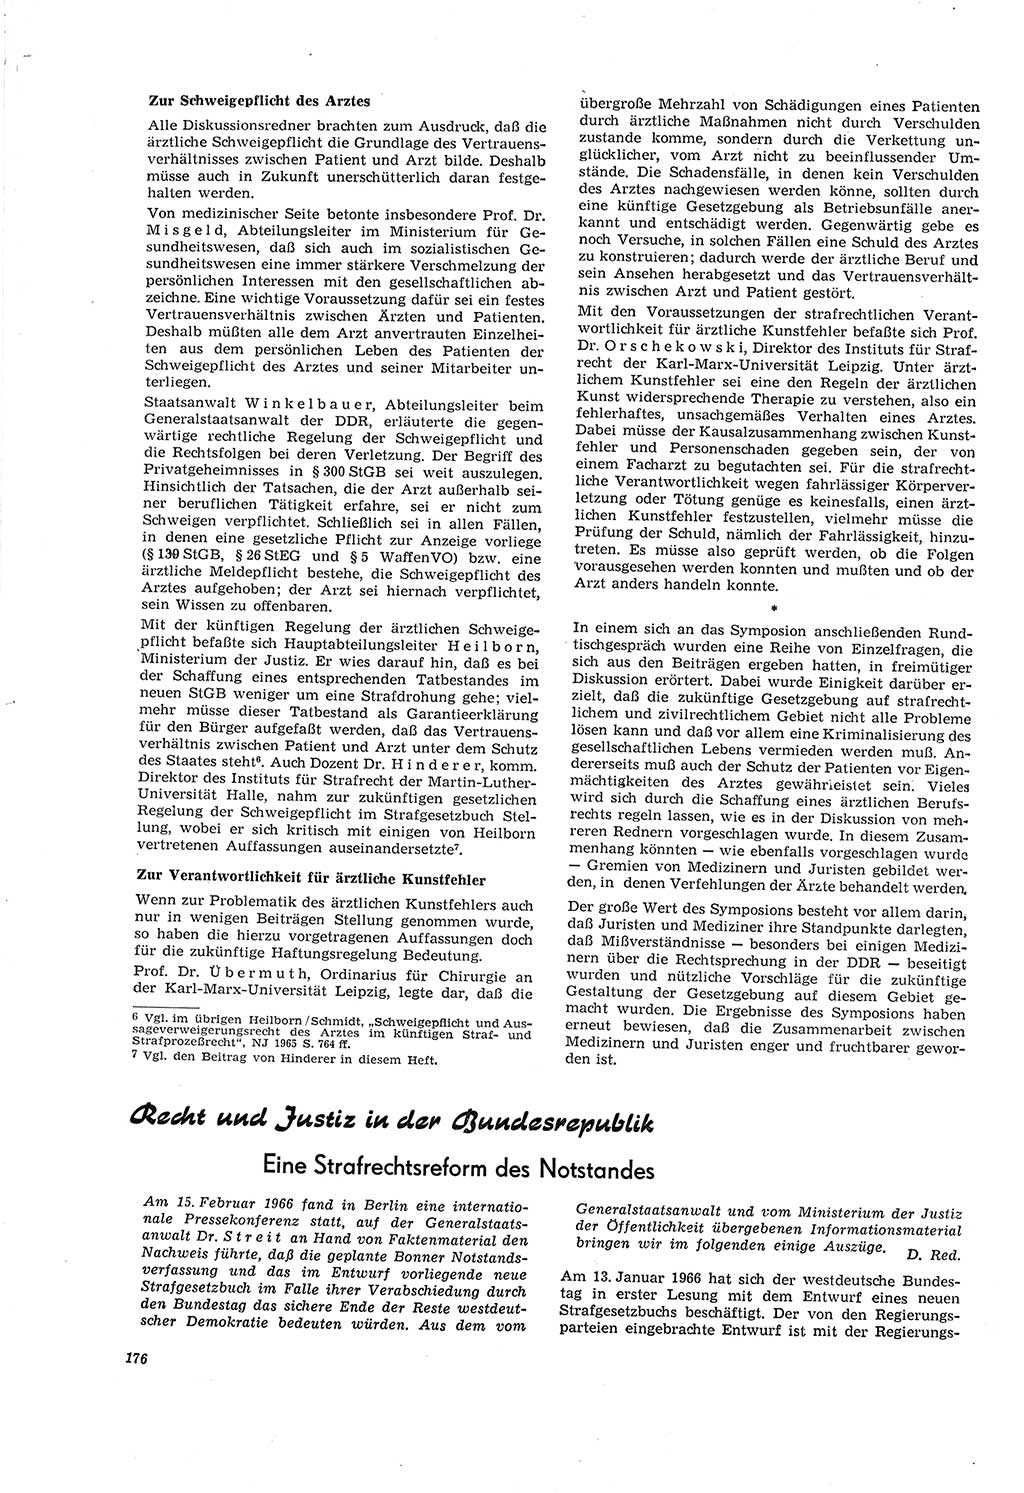 Neue Justiz (NJ), Zeitschrift für Recht und Rechtswissenschaft [Deutsche Demokratische Republik (DDR)], 20. Jahrgang 1966, Seite 176 (NJ DDR 1966, S. 176)